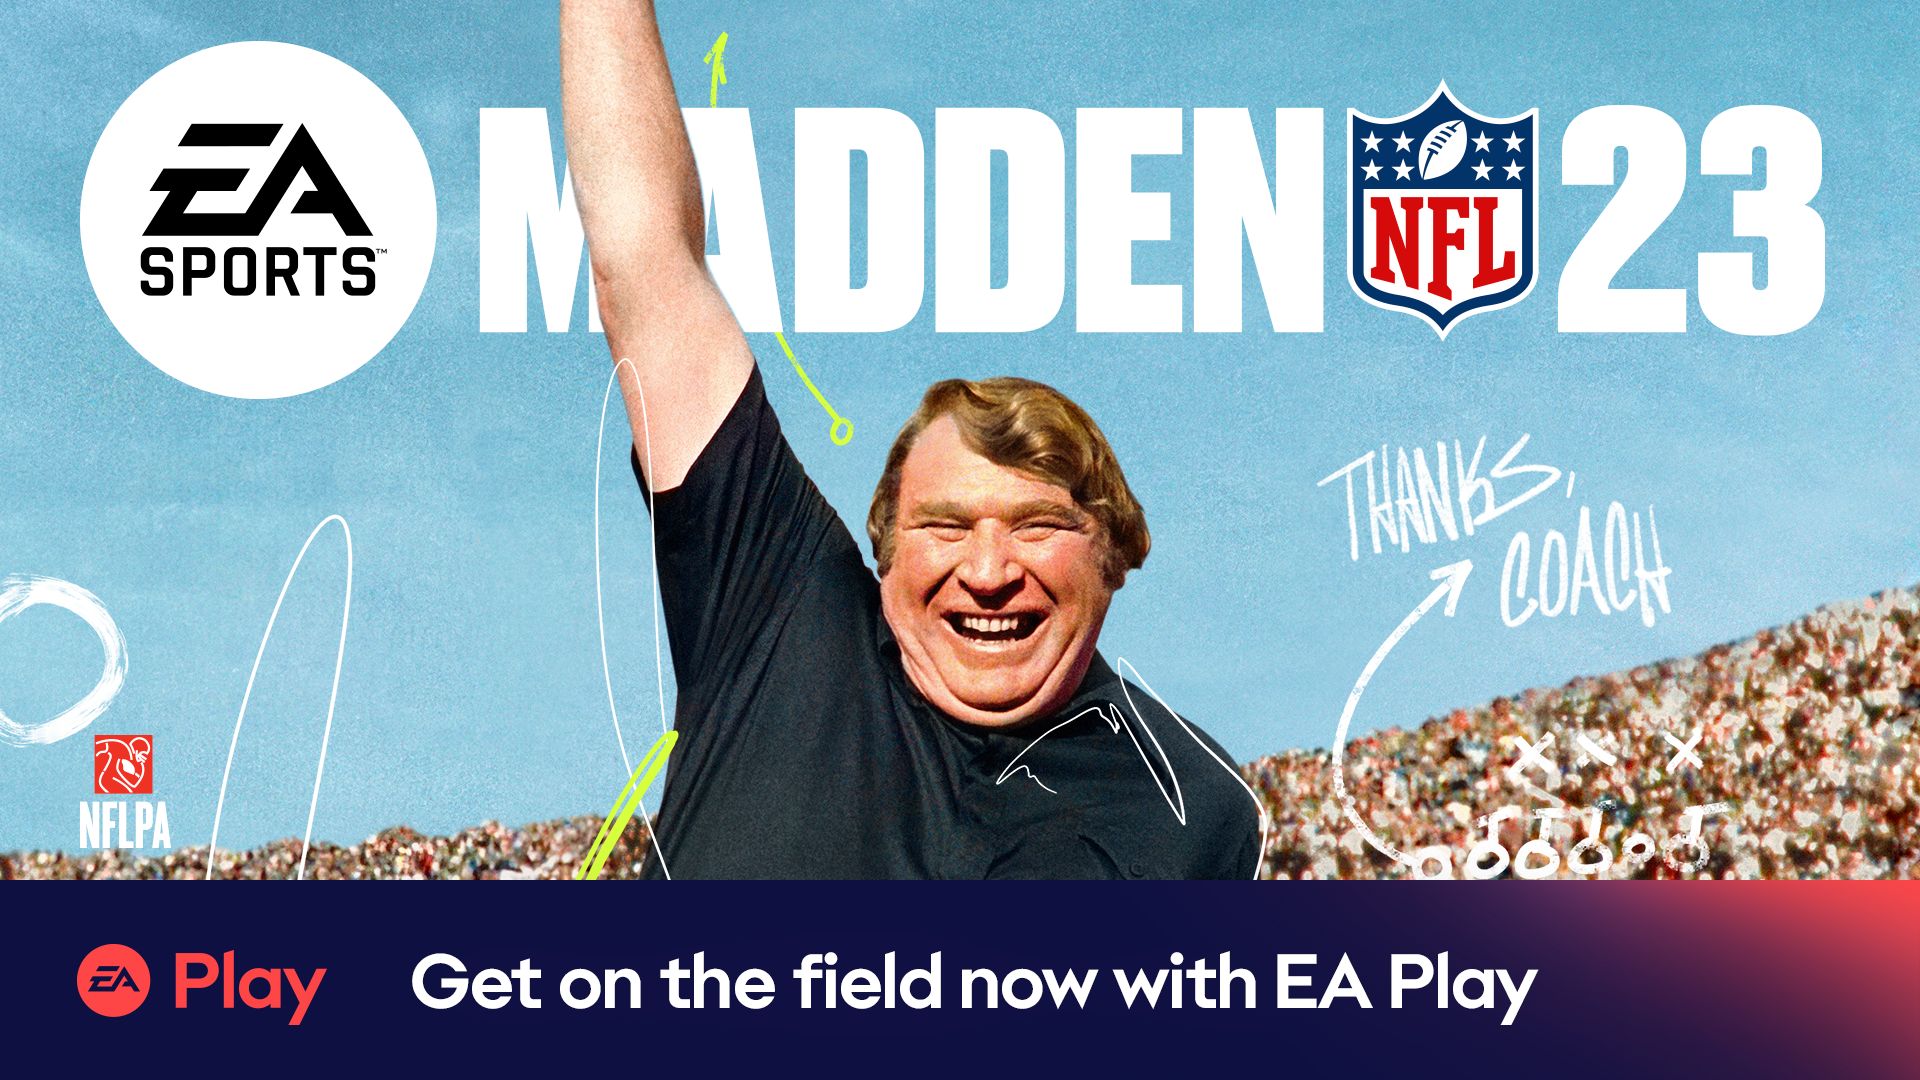 Wskocz do Madden NFL 23 wcześnie z EA Play